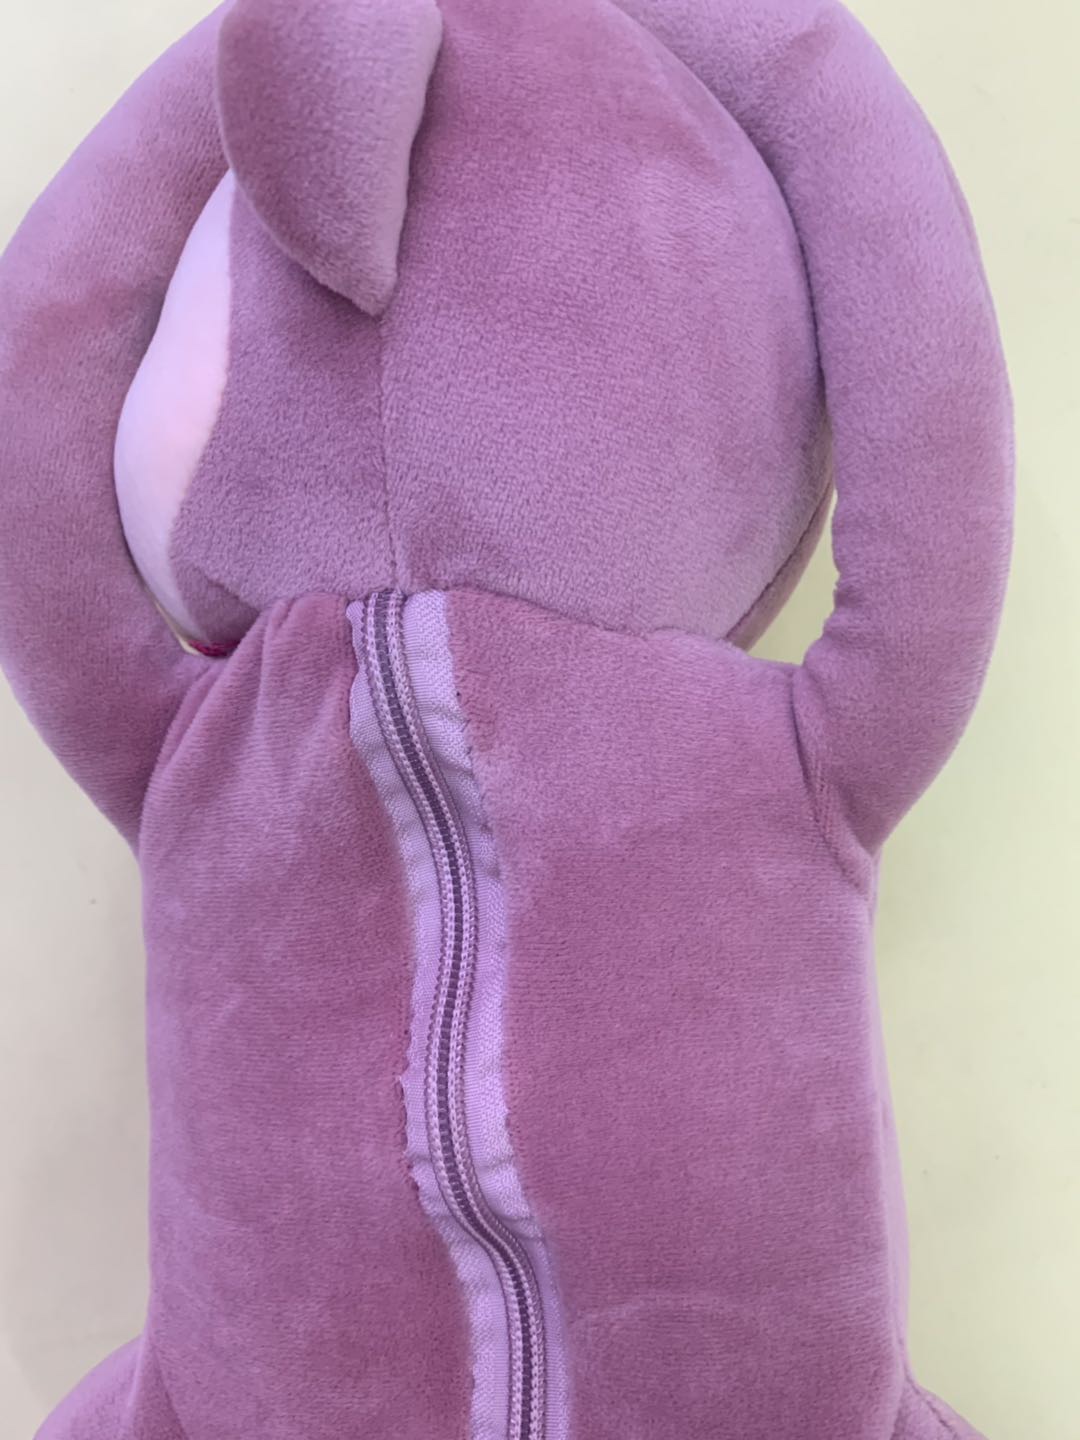 涤纶25厘米纸巾𤠣毛绒玩具送小孩子女生玩具家居装饰品细节图